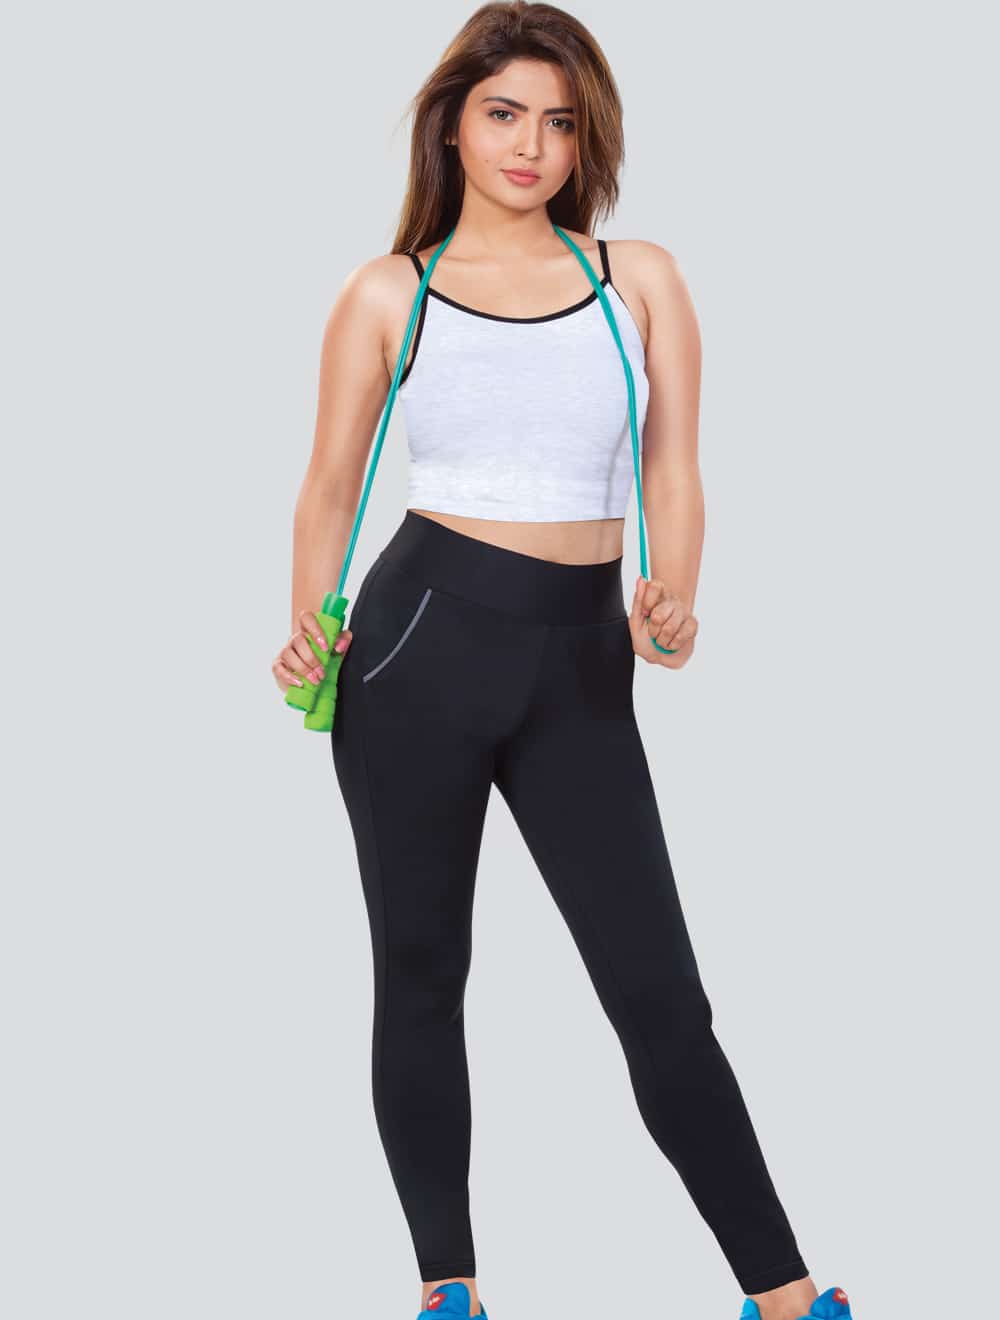 Workout Gear For Women - Pants in Black